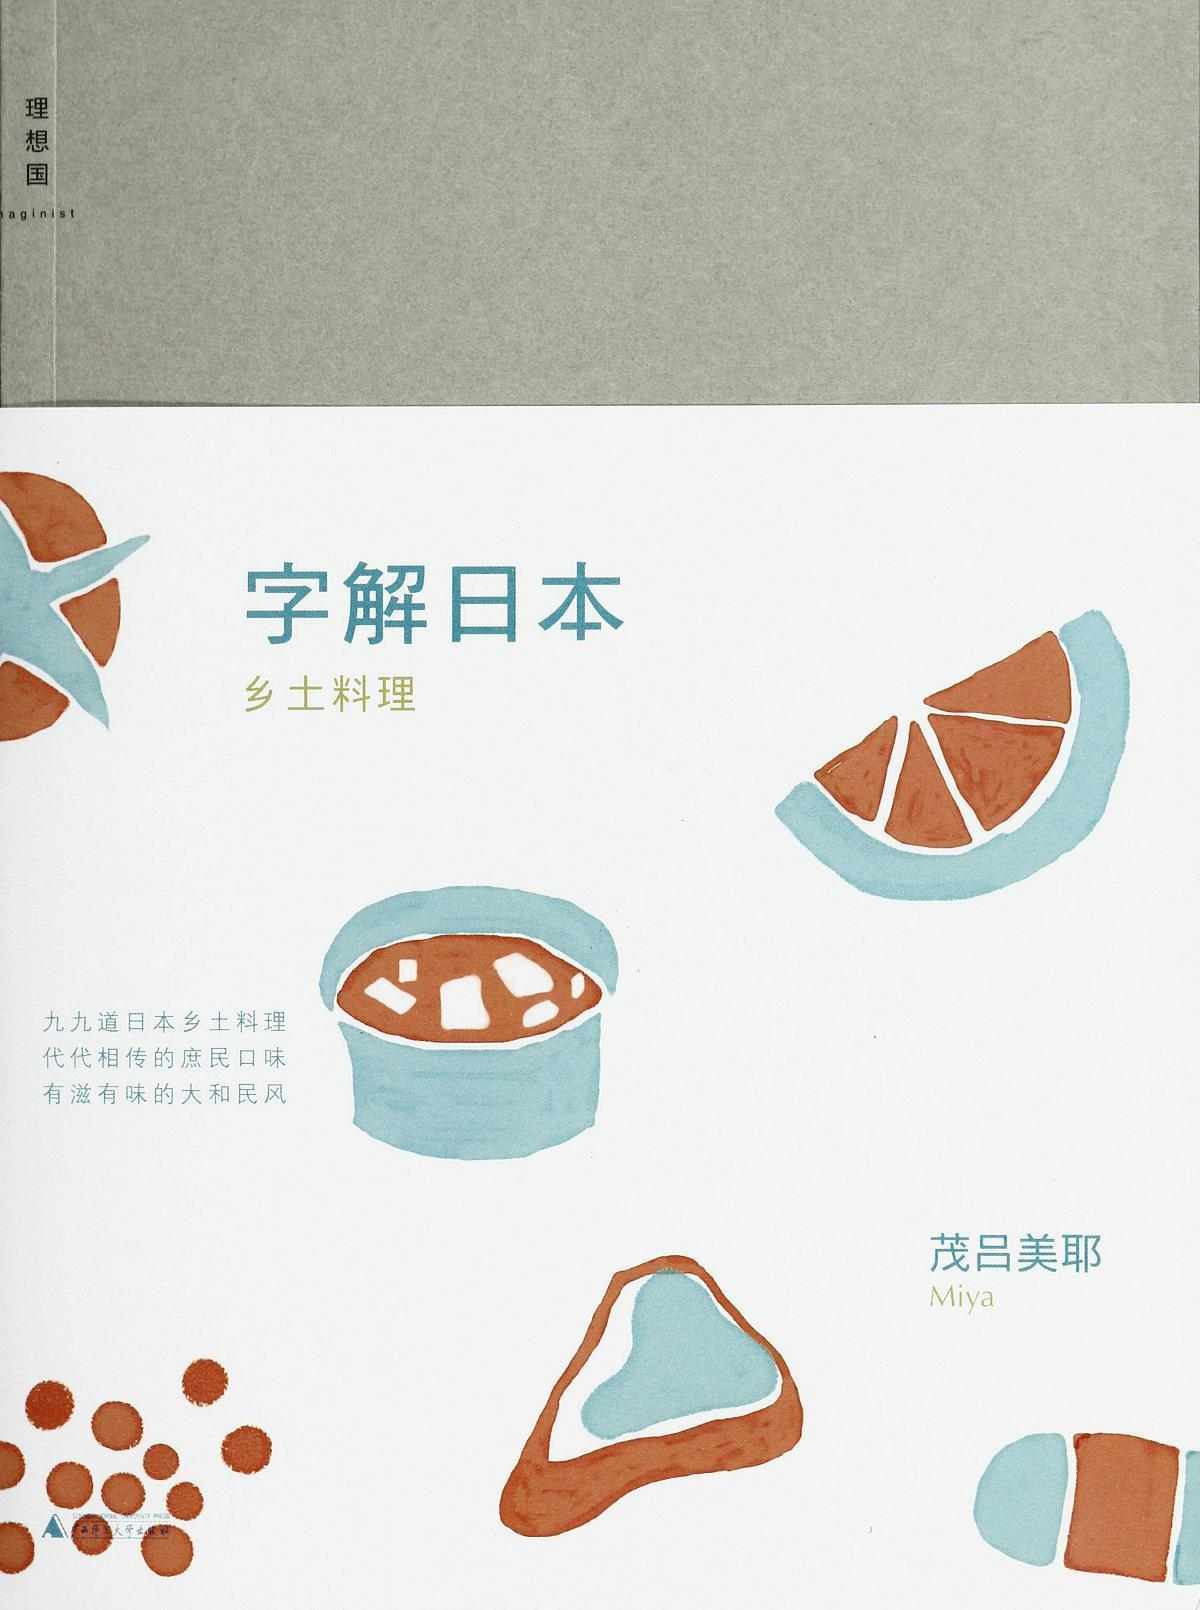 字解日本:乡土料理